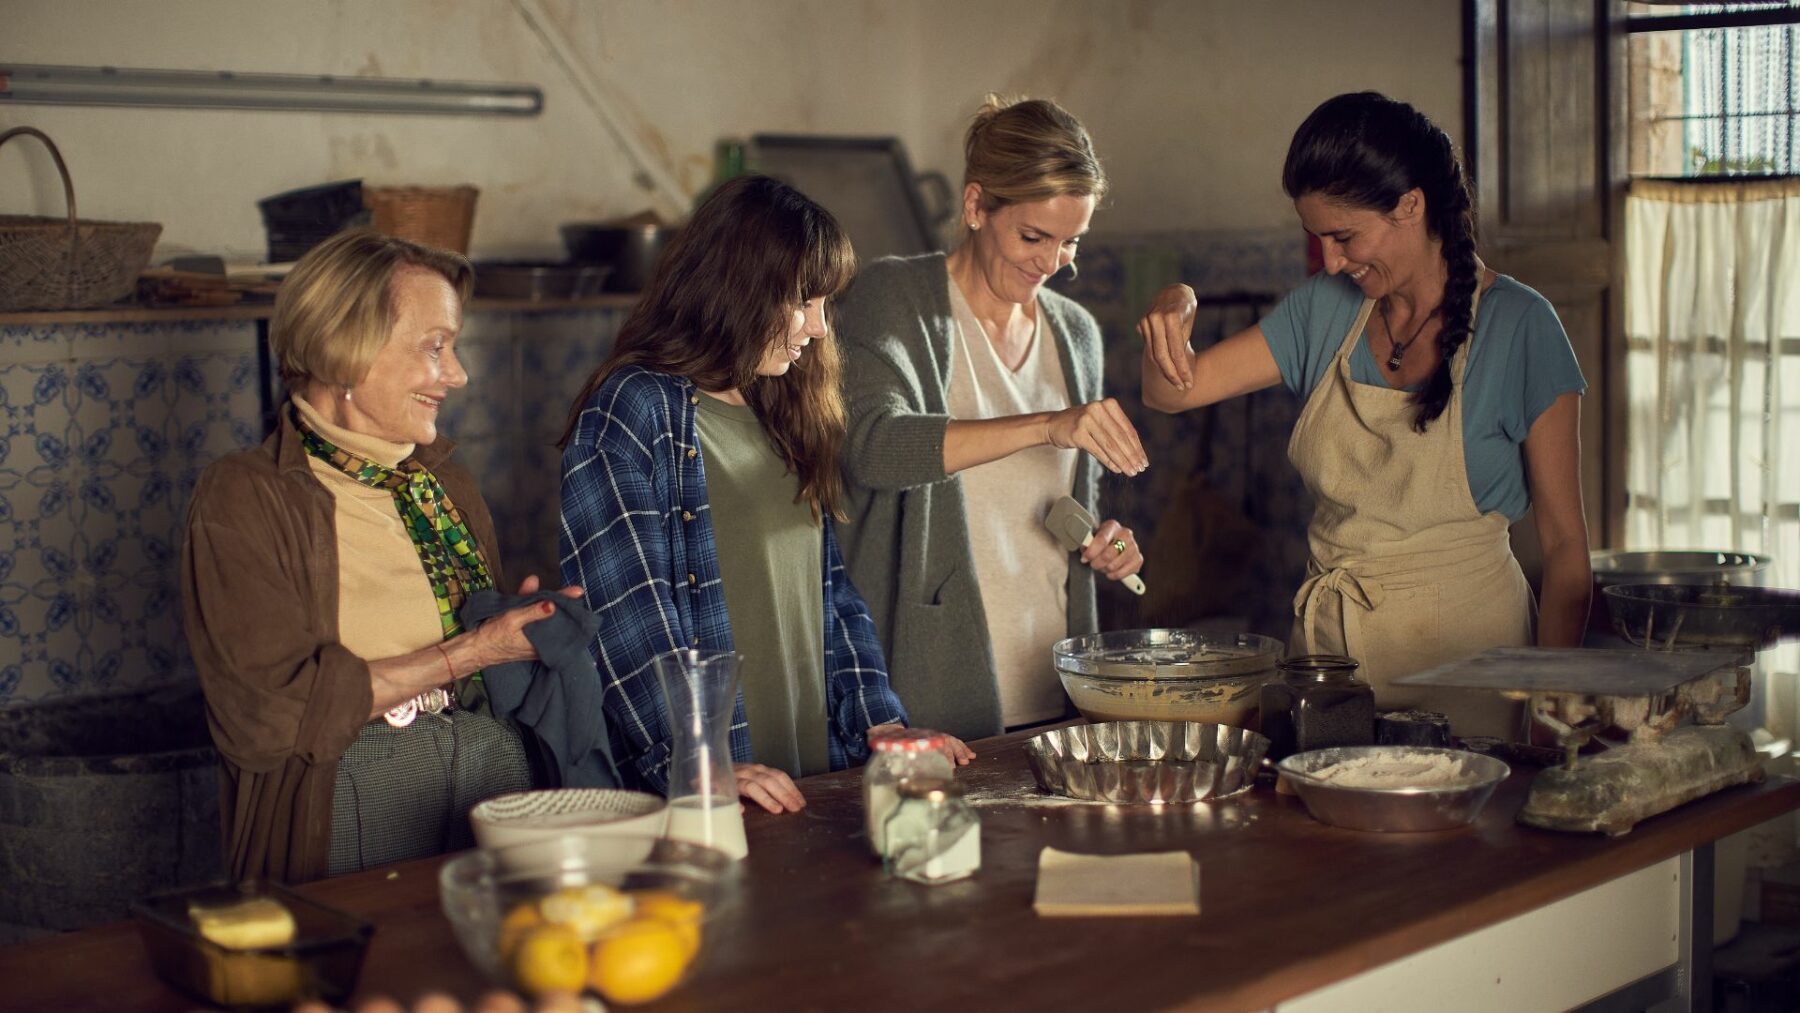 Cztery kobiety spędzające czas na wspólnym gotowaniu.